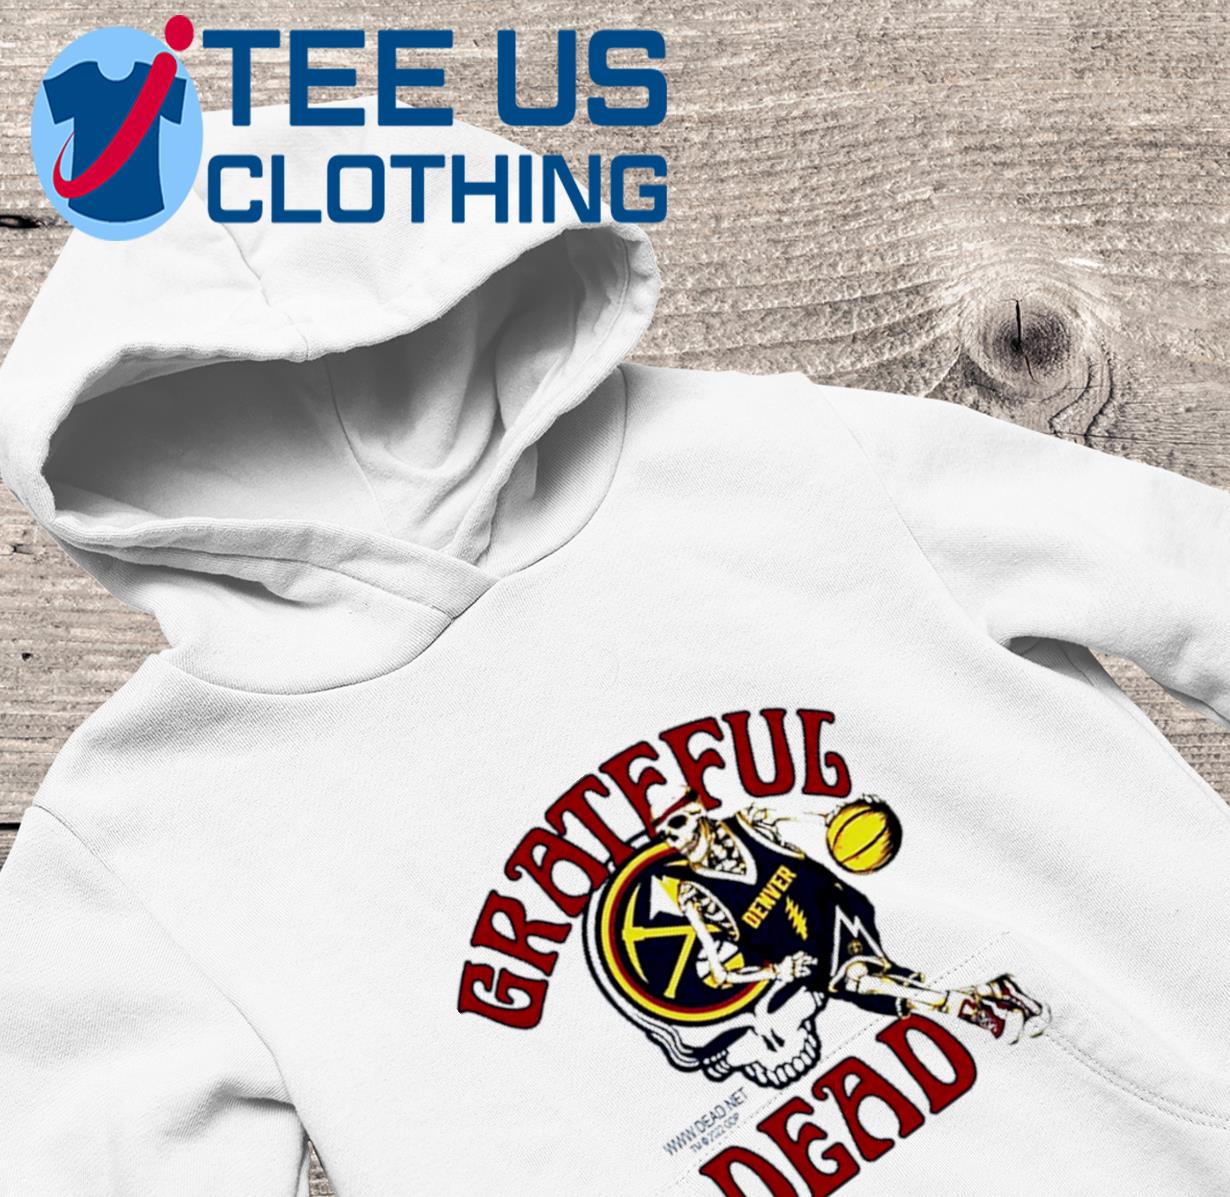 2023 Grateful Dead Denver Nuggets Skull Skeleton T Shirt, hoodie